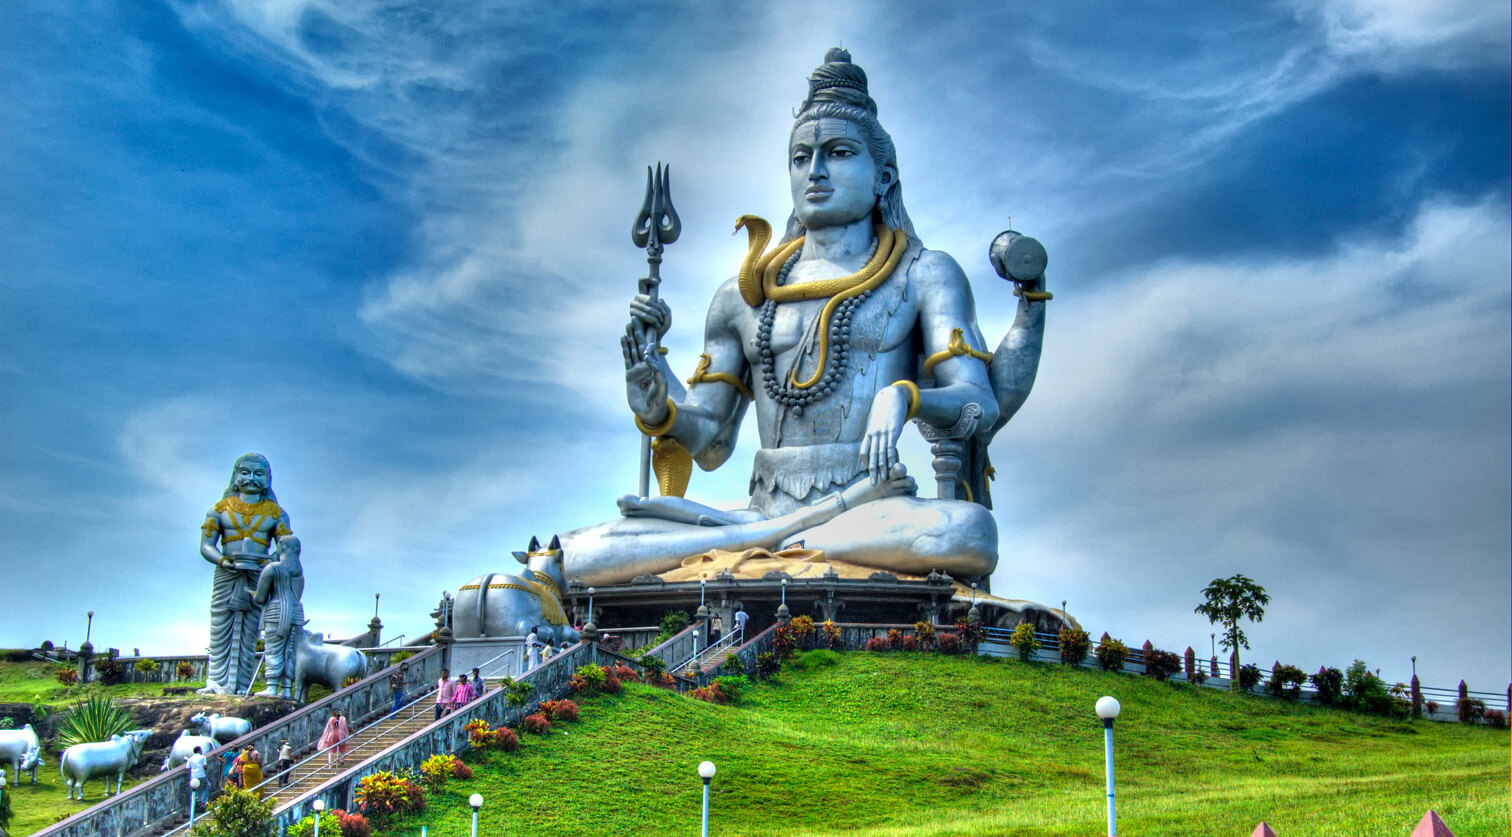 Good Morning Image With Har Har Mahadev - Shiva Idol - 1512x837 Wallpaper -  